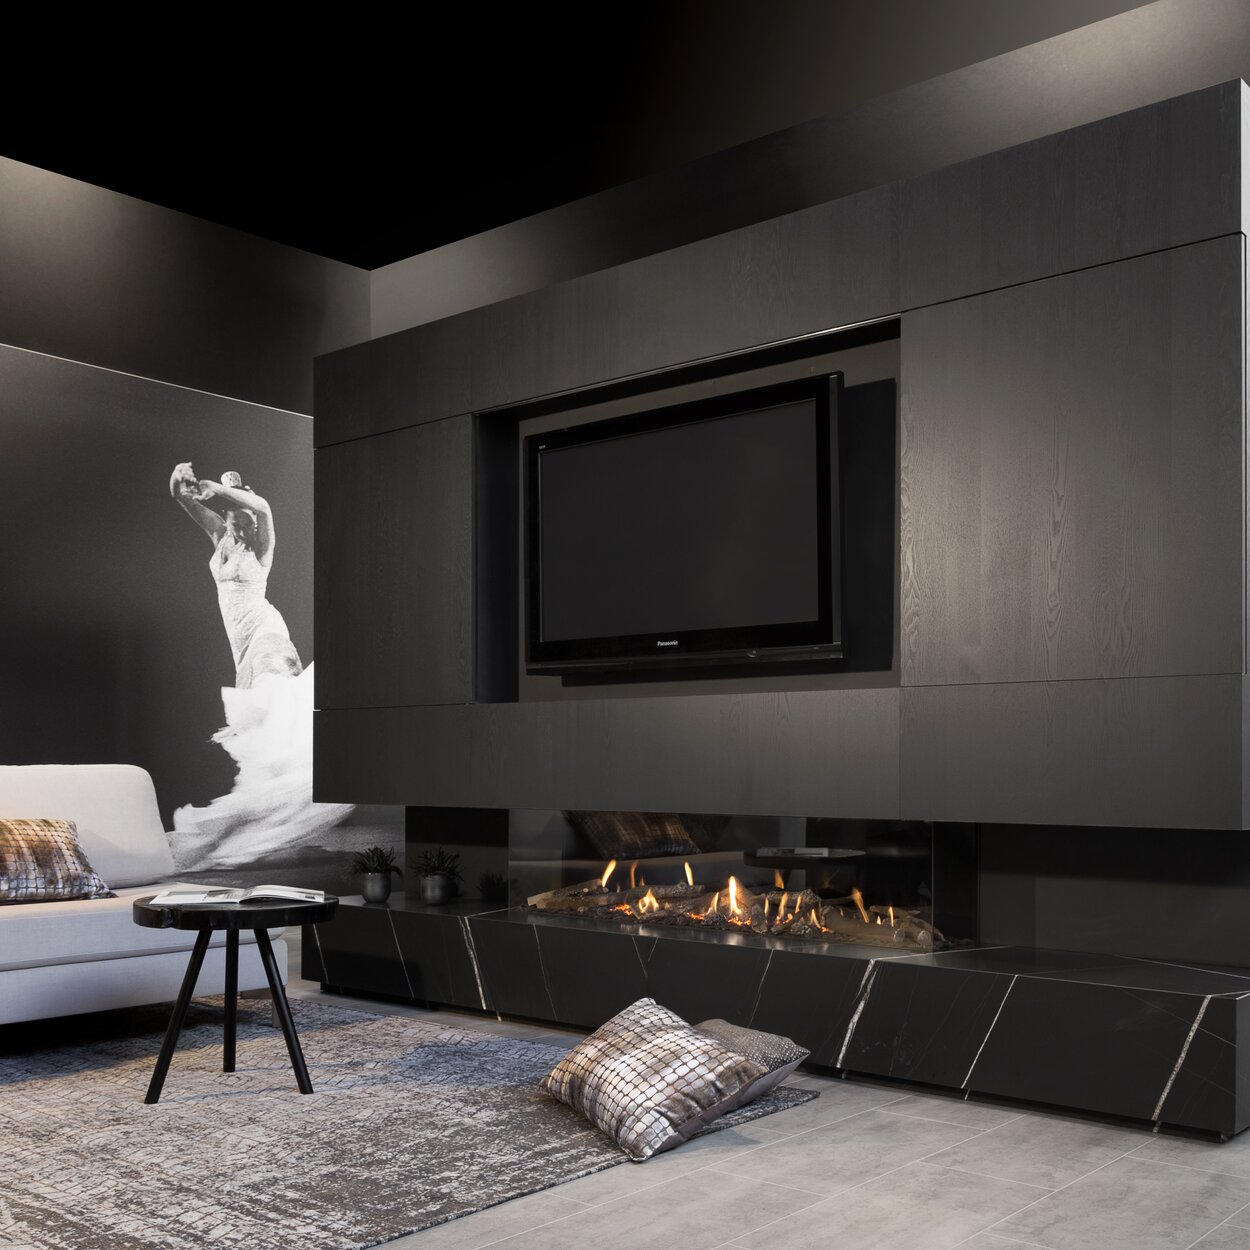 Gas-Kamin G170/37S dreiseitig verglast eingebaut in schwarze Wohnwand mit integriertem Fernseher im modernen Wohnzimmer